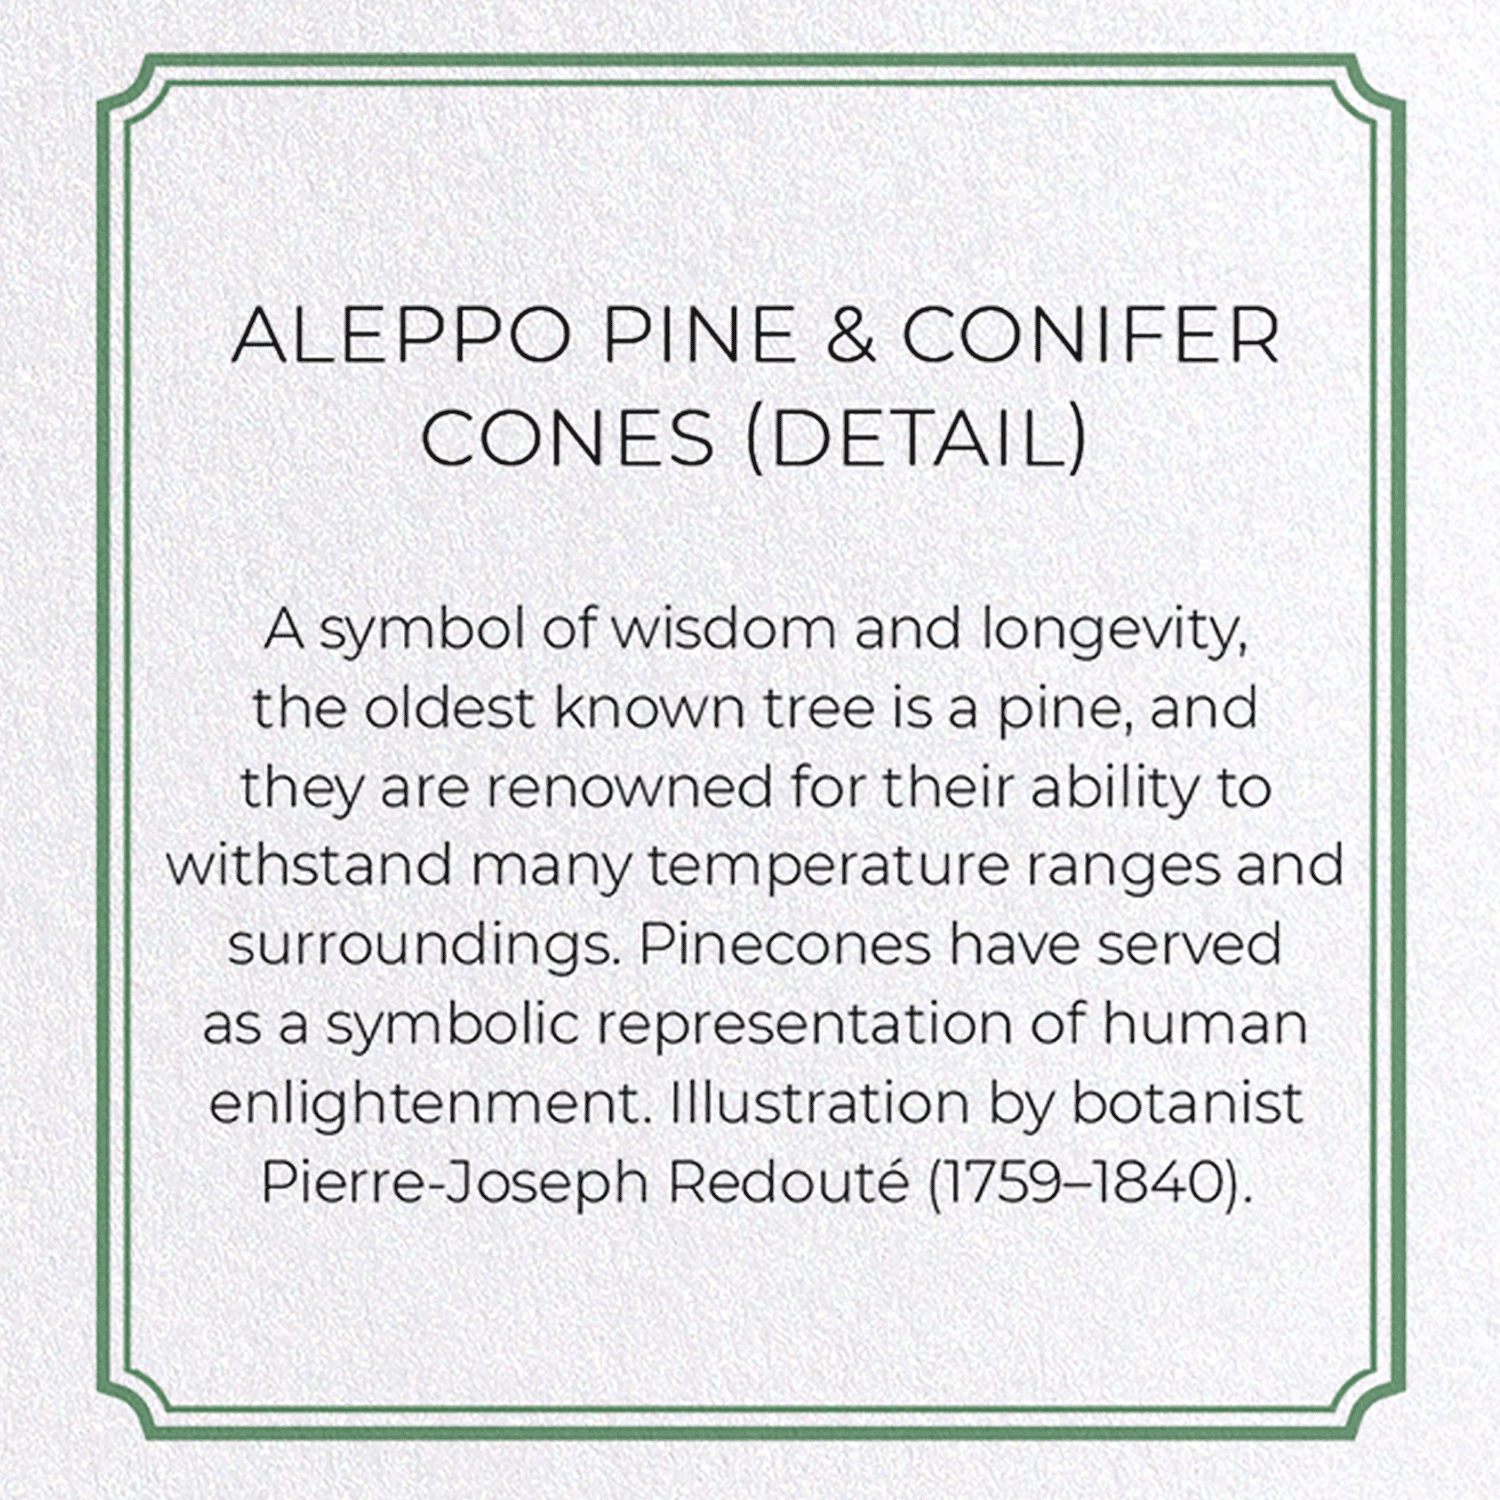 ALEPPO PINE & CONIFER CONES